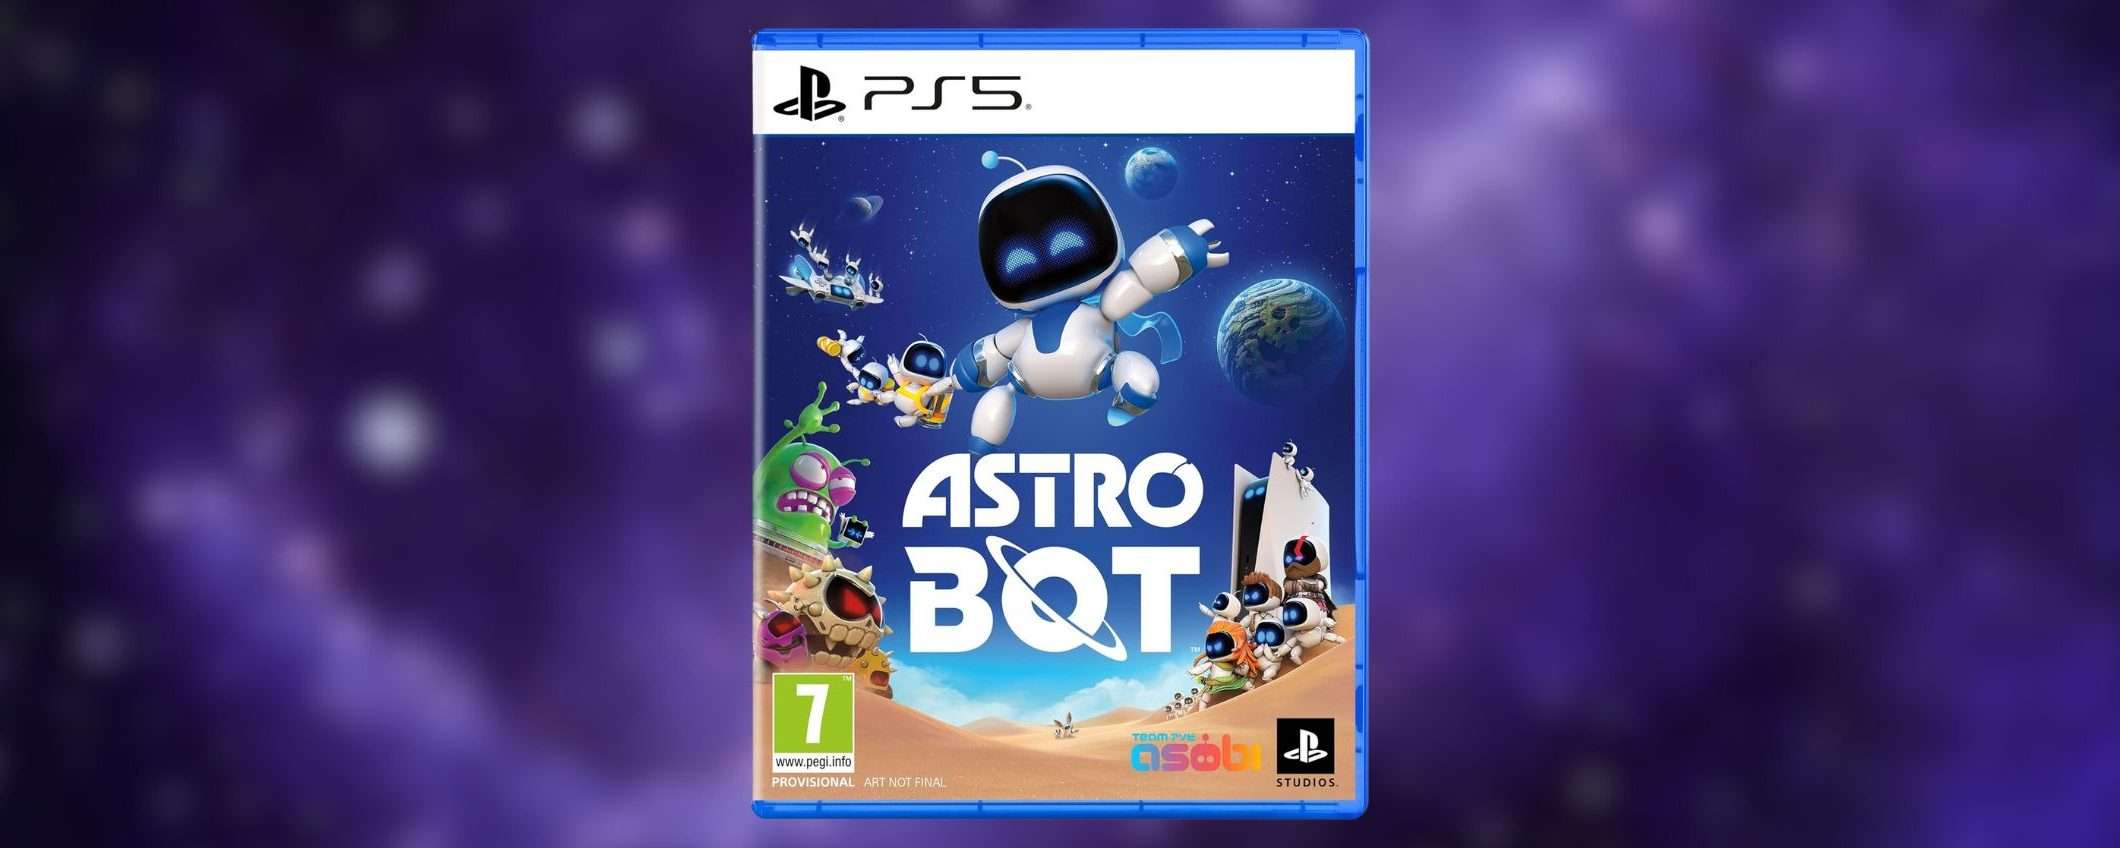 Astro Bot per PS5: prenotalo SUBITO in sconto su Amazon (-15%)